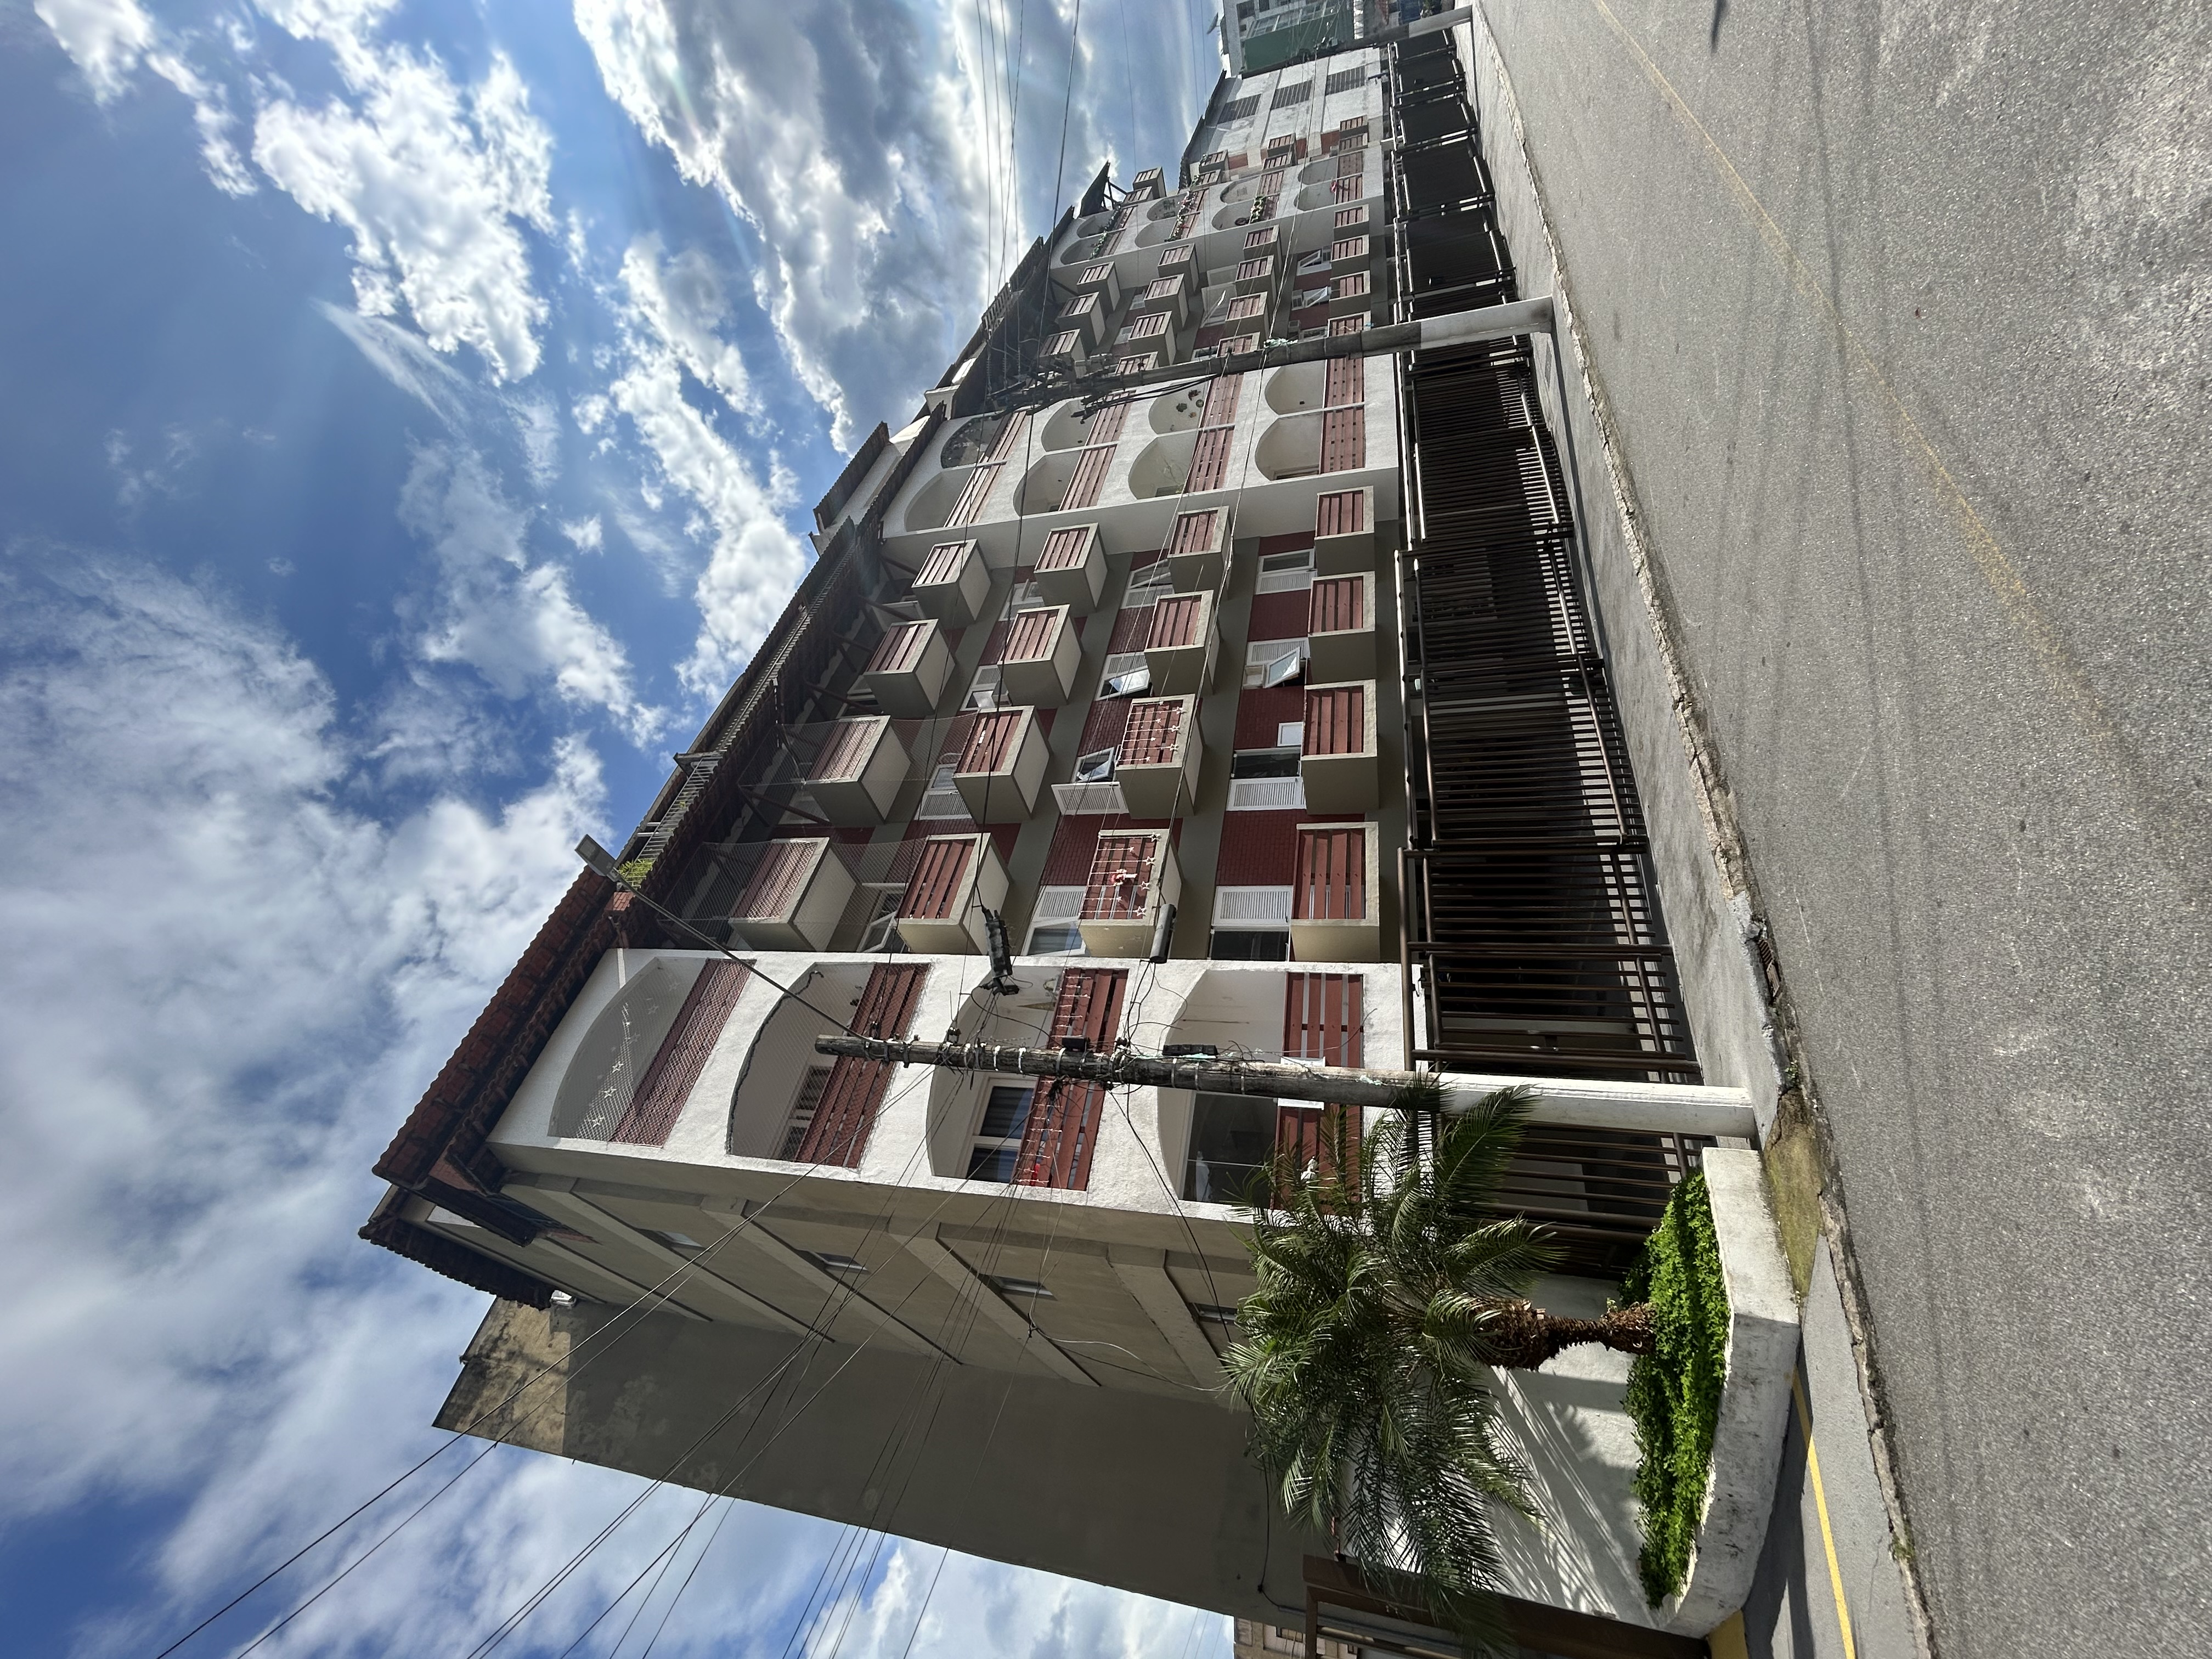 Cobertura duplex - Venda, Parque das Palmeiras, Angra dos Reis, RJ